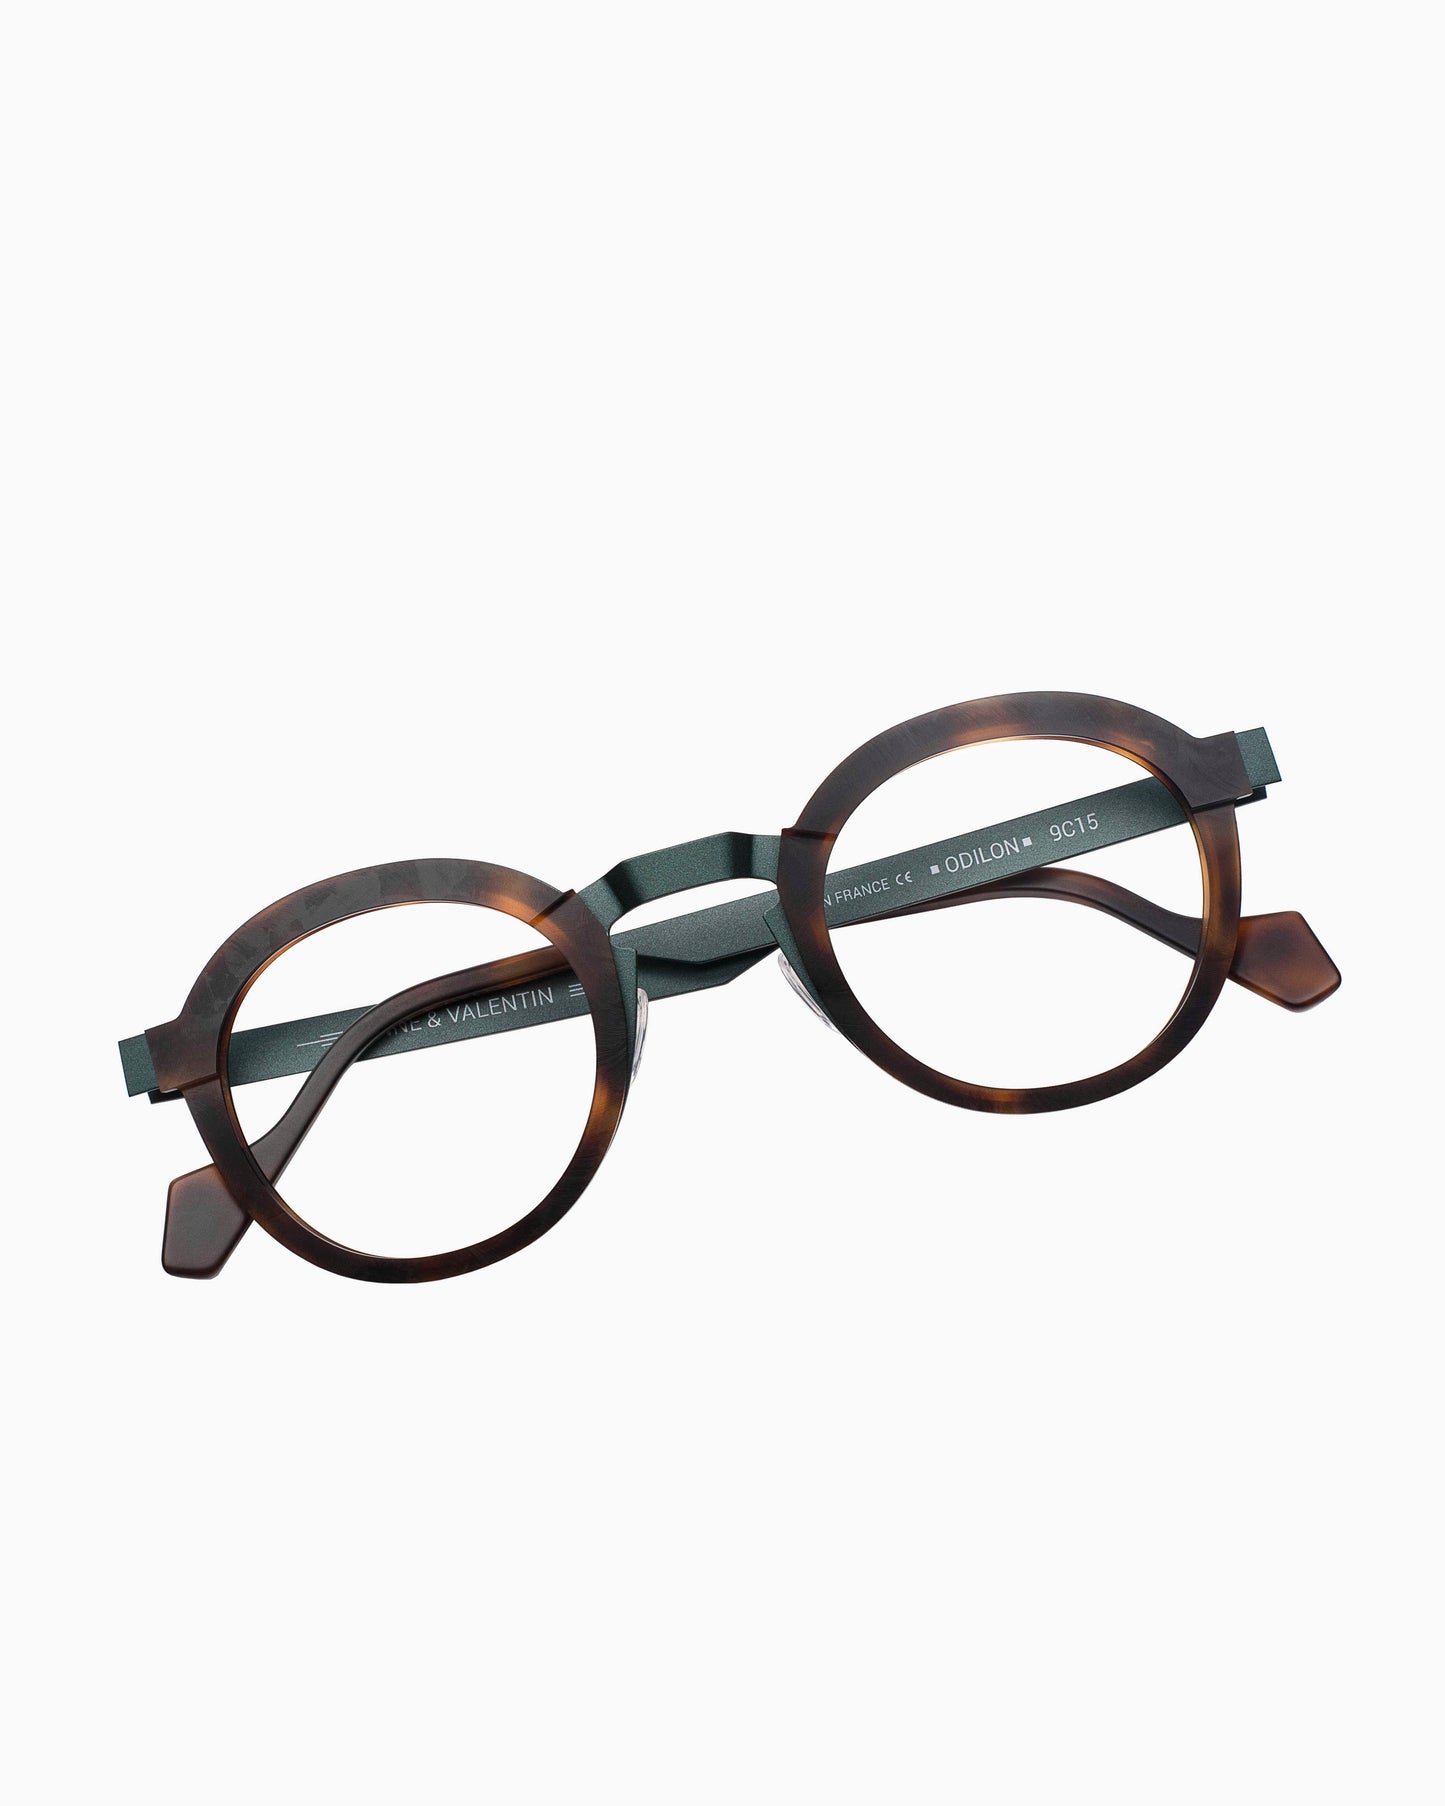 Anne et Valentin - Odilon - 9c15 | Bar à lunettes